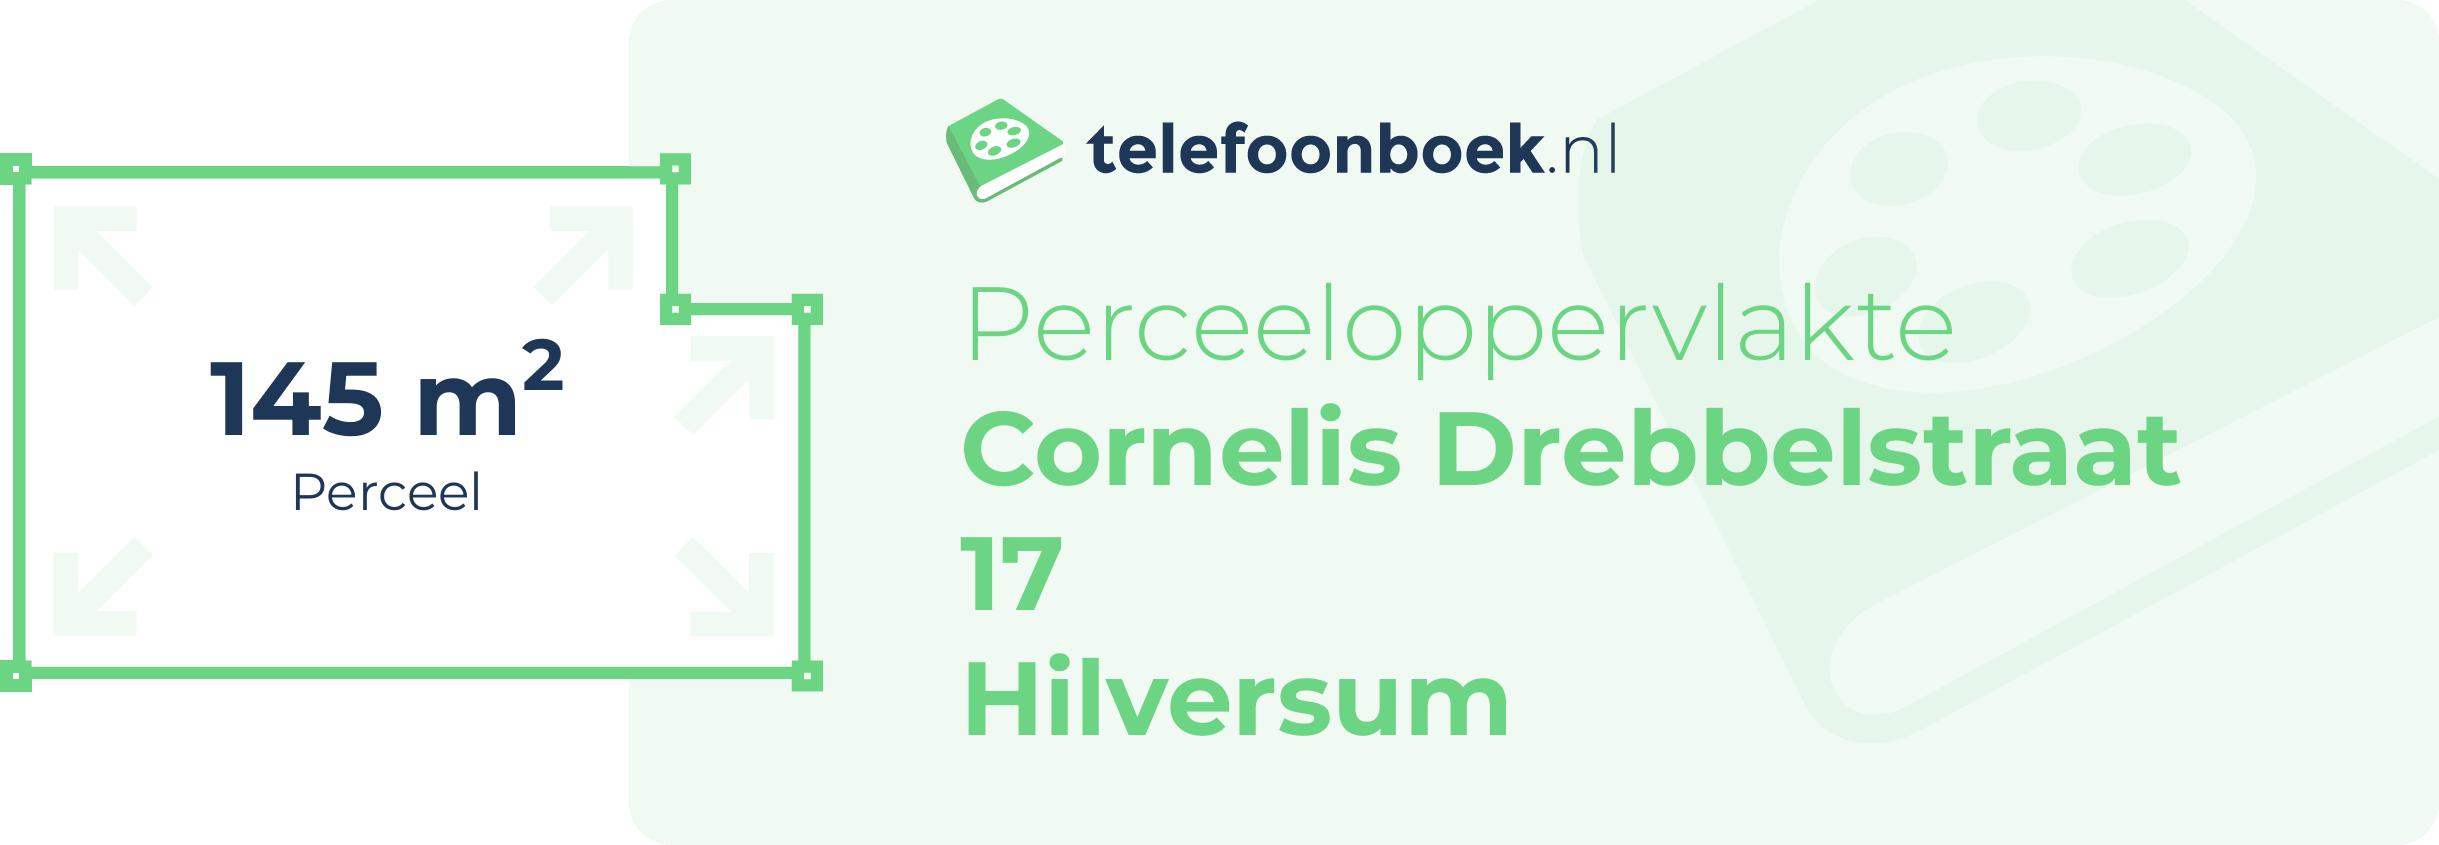 Perceeloppervlakte Cornelis Drebbelstraat 17 Hilversum